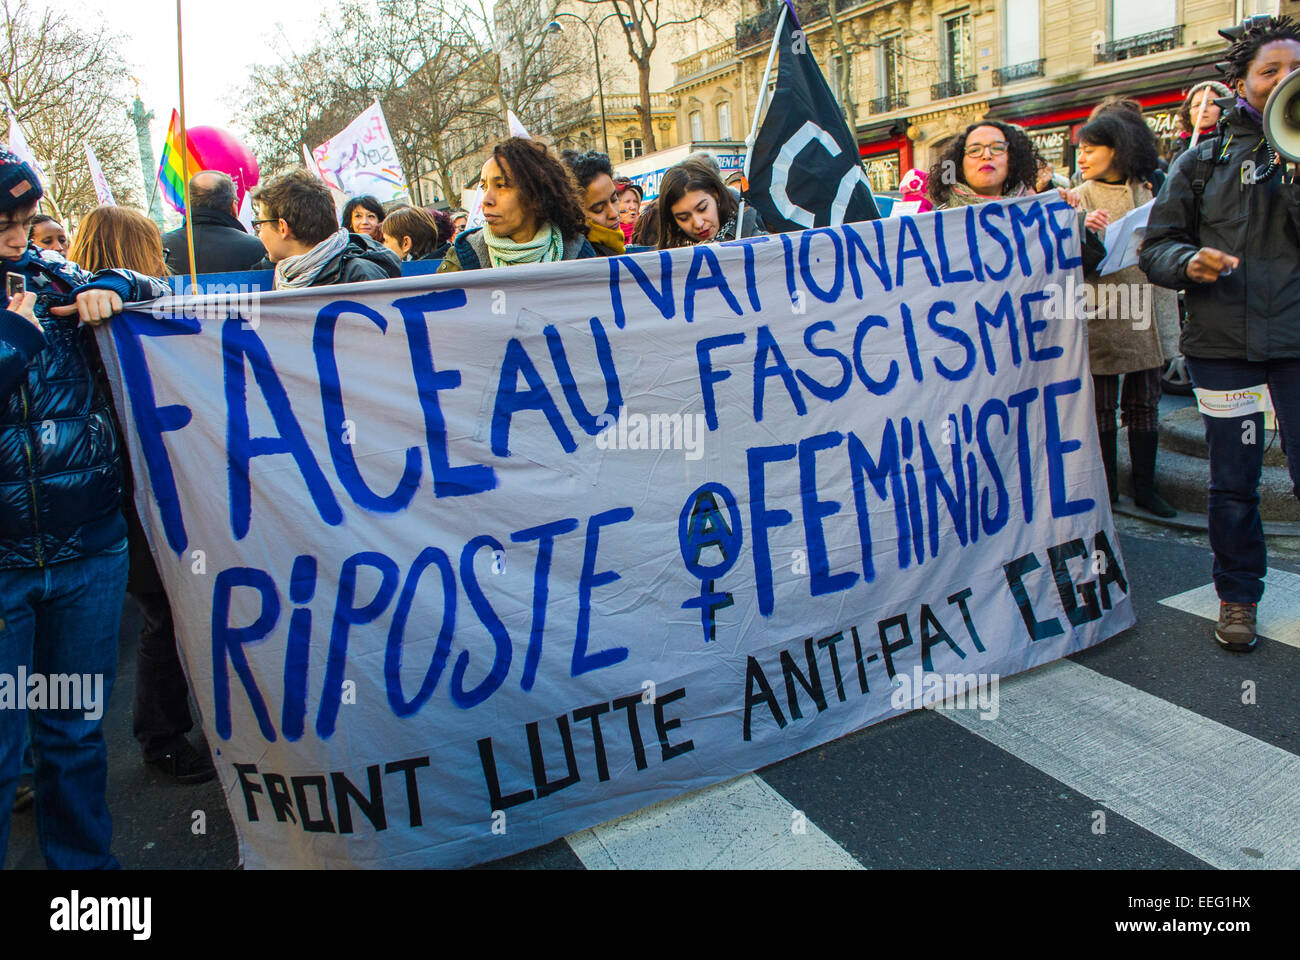 París, Francia, Grupos de N.G.O. franceses, Demostración feminista en honor del aniversario de la legalización de la ley del aborto, Mujeres Marching Holding Banners de la protesta, Anti-fascistas, rally pro aborto Foto de stock